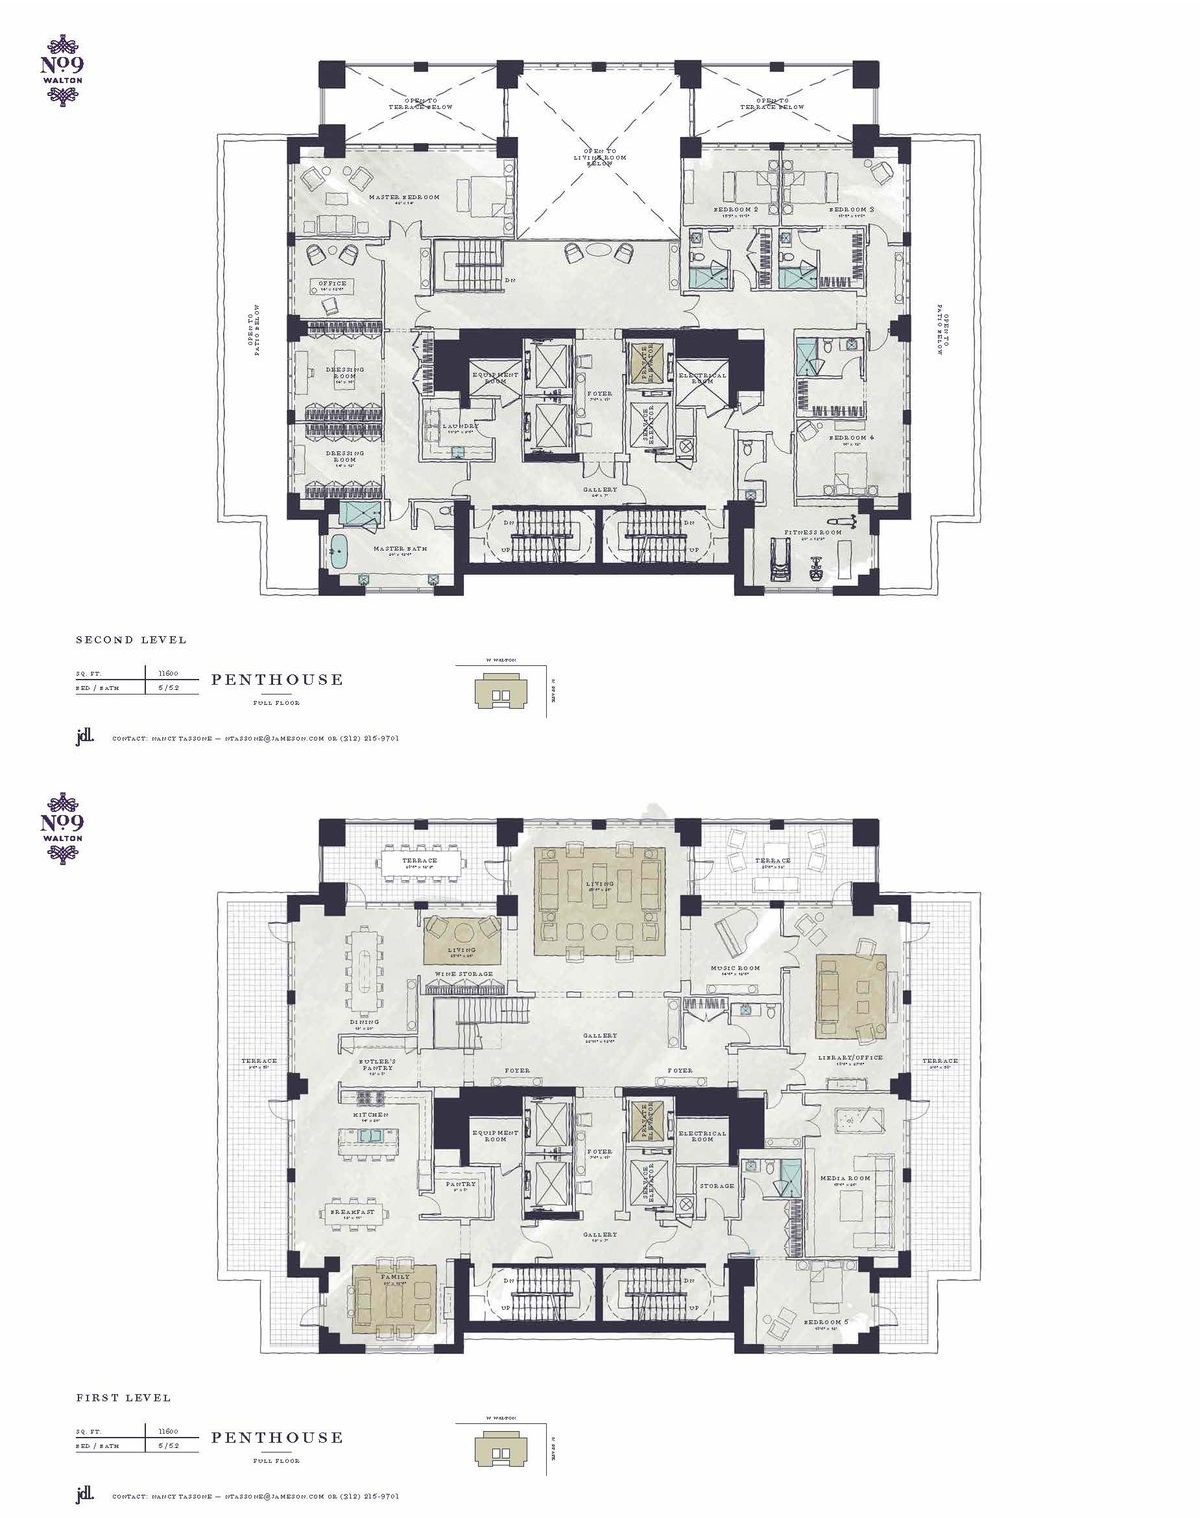 No.9 Walton Chicago Penthouse Apartment floor plans